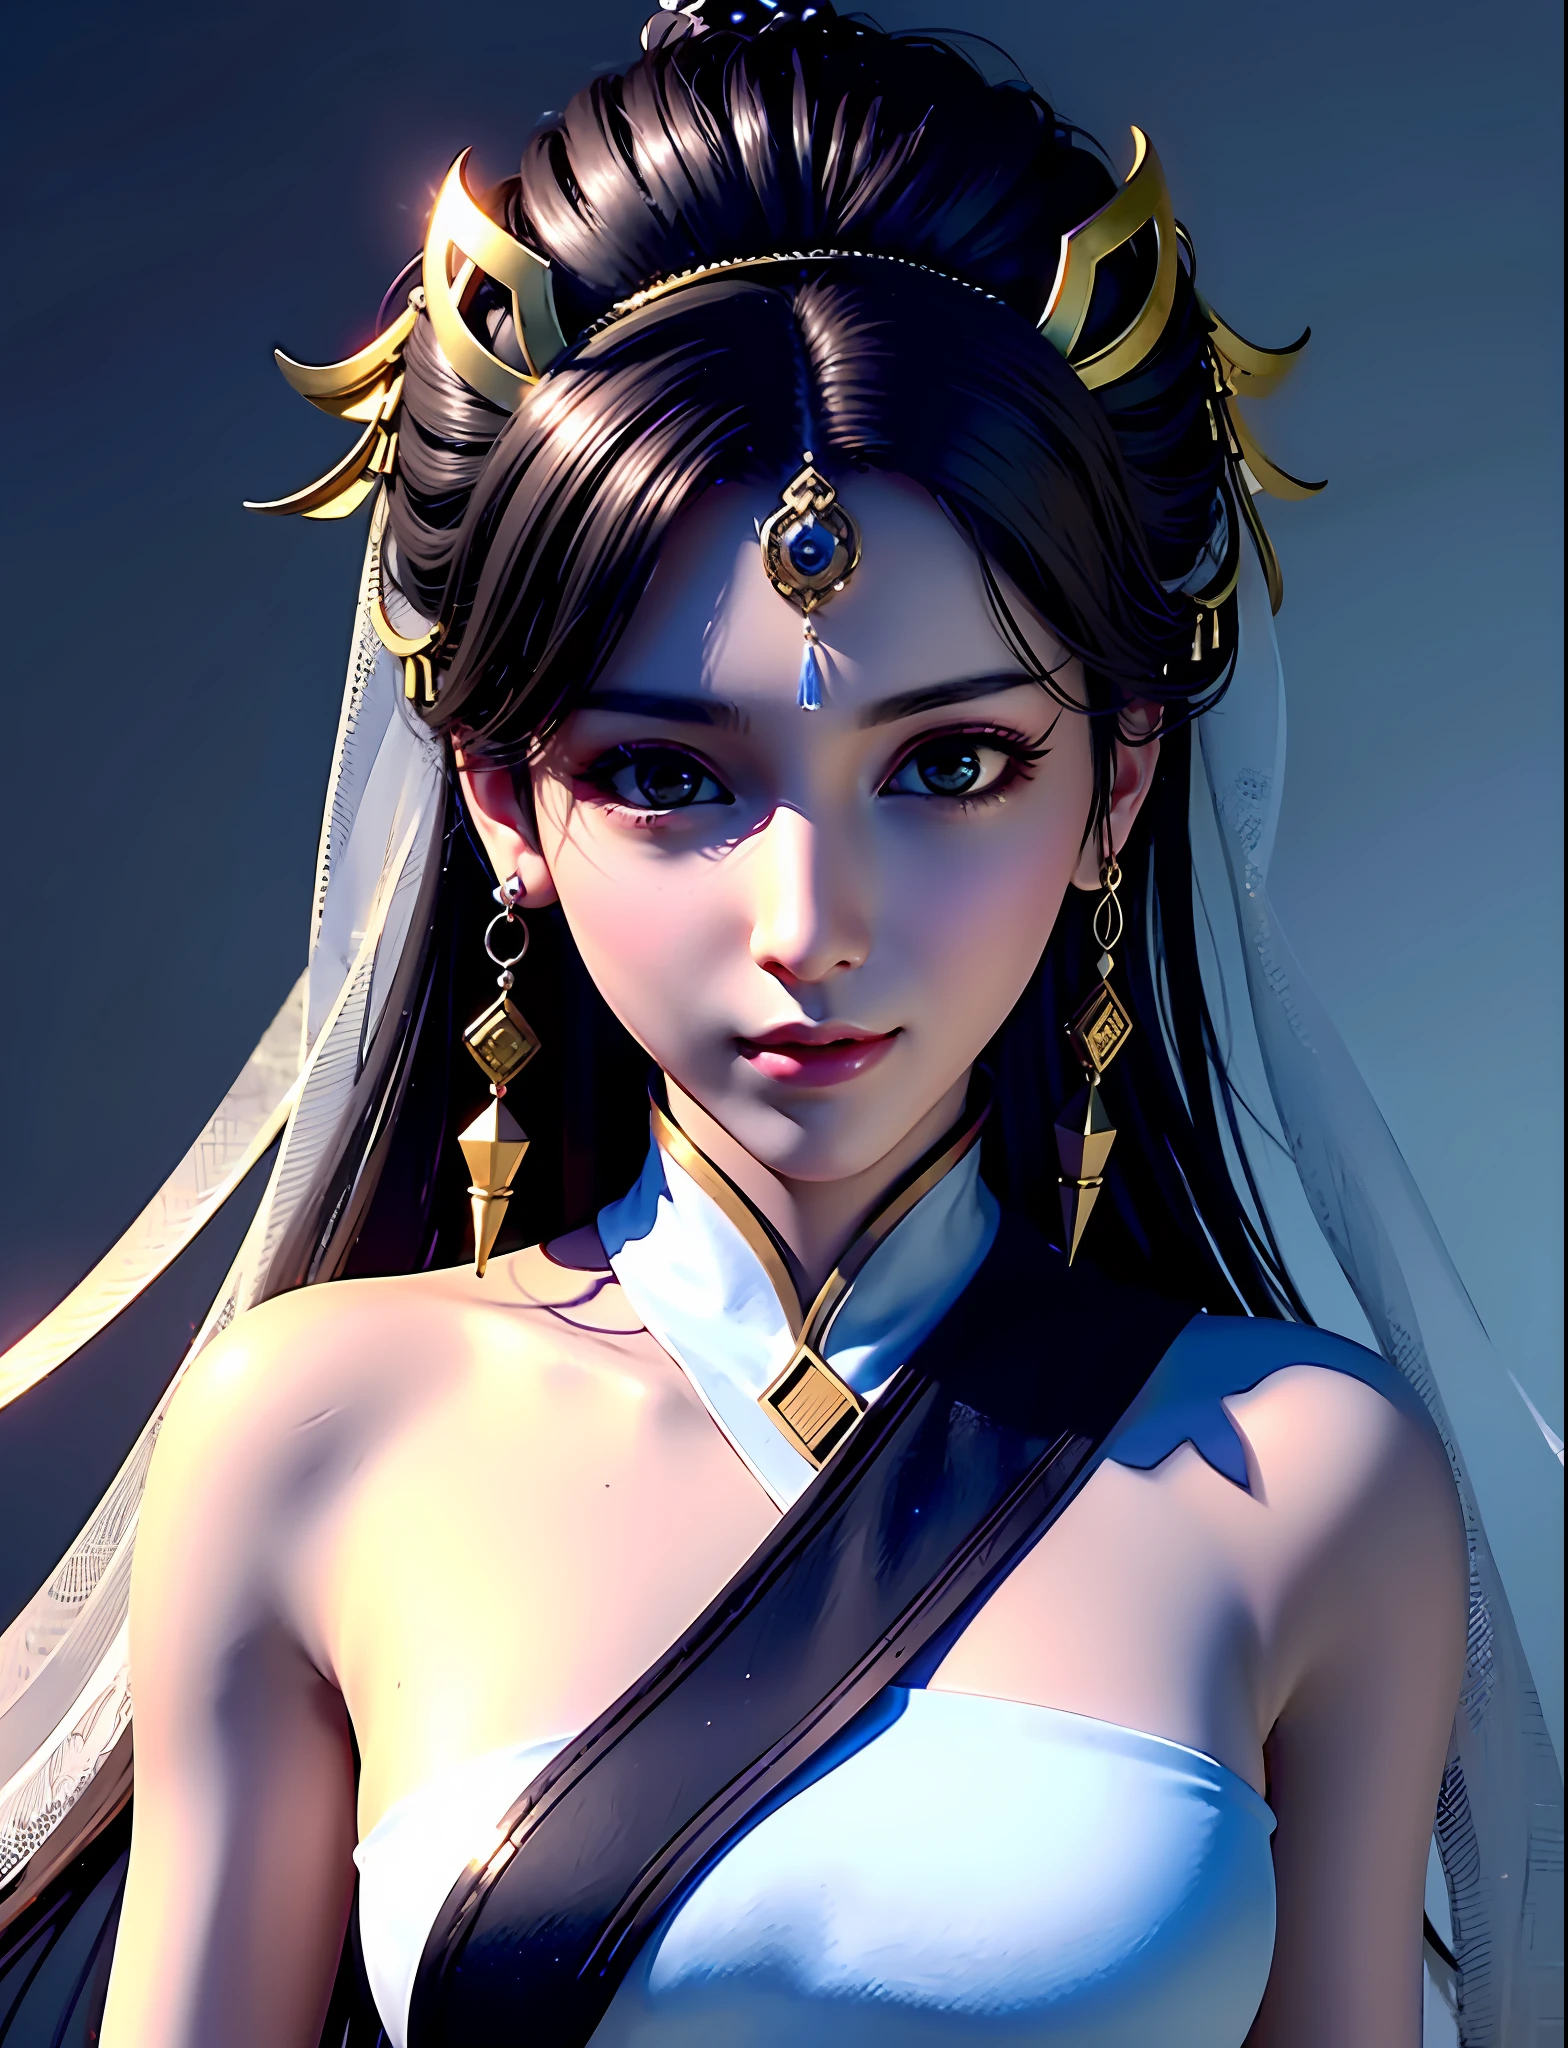 头上戴面纱的女孩, 美丽如神，游戏CG, Xianxia hero, 灵感来自杜琼, 虚幻引擎渲染 + 女神, bian lian, Xianxia, 3D 动漫 逼真